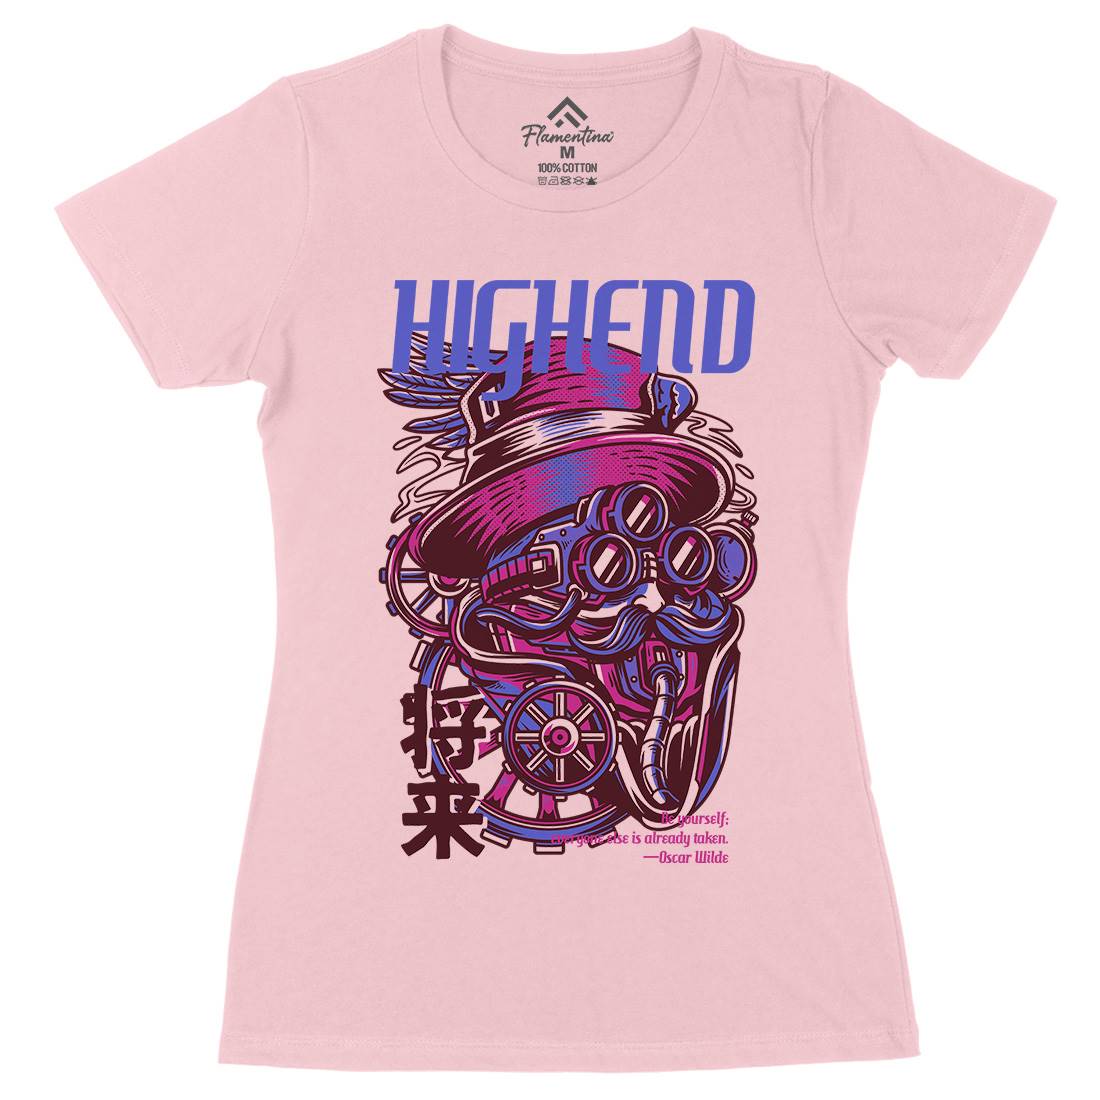 High End Womens Organic Crew Neck T-Shirt Steampunk D610